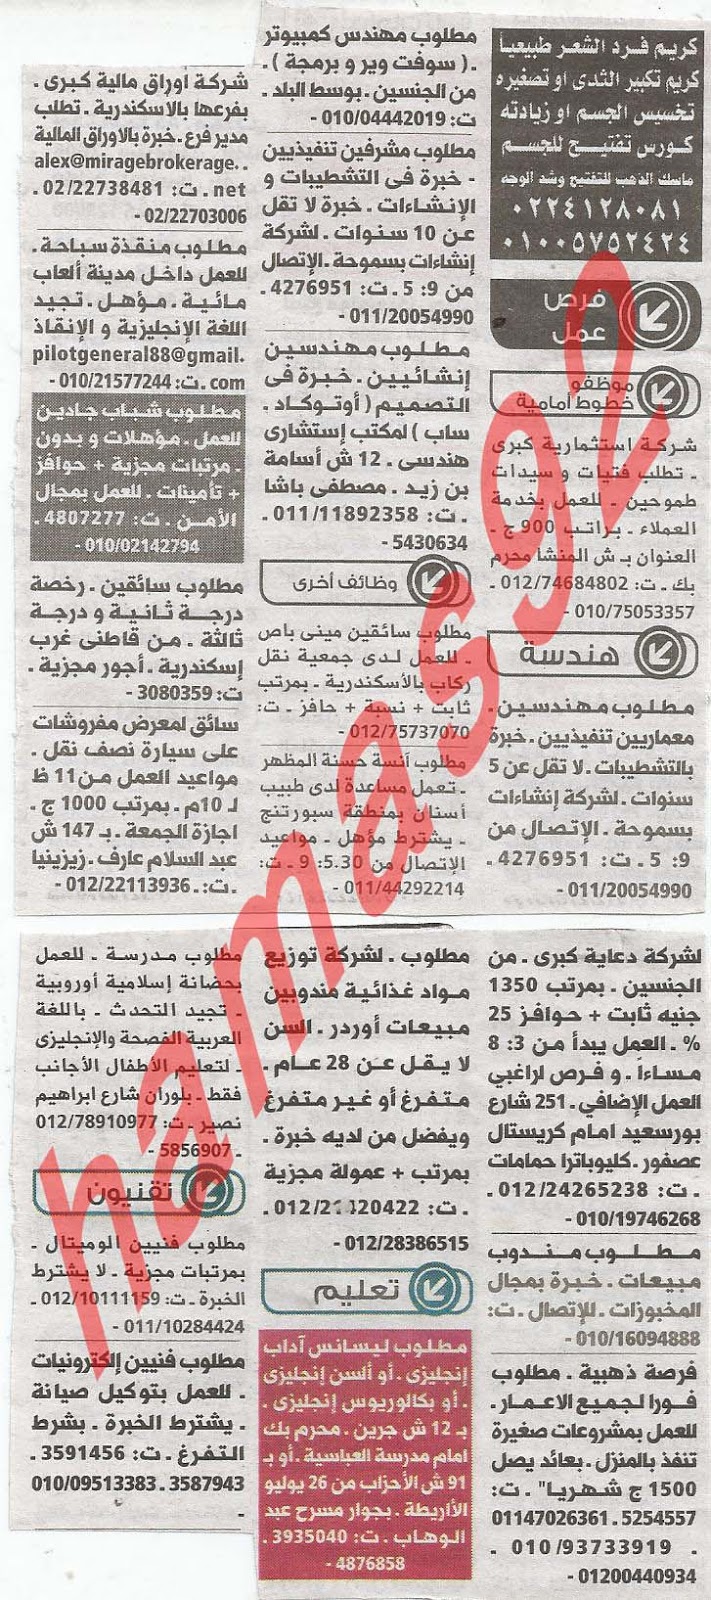 وظائف جريدة الوسيط الاسكندرية الاثنين 25-02-2013 %D9%88+%D8%B3+%D8%B3+6